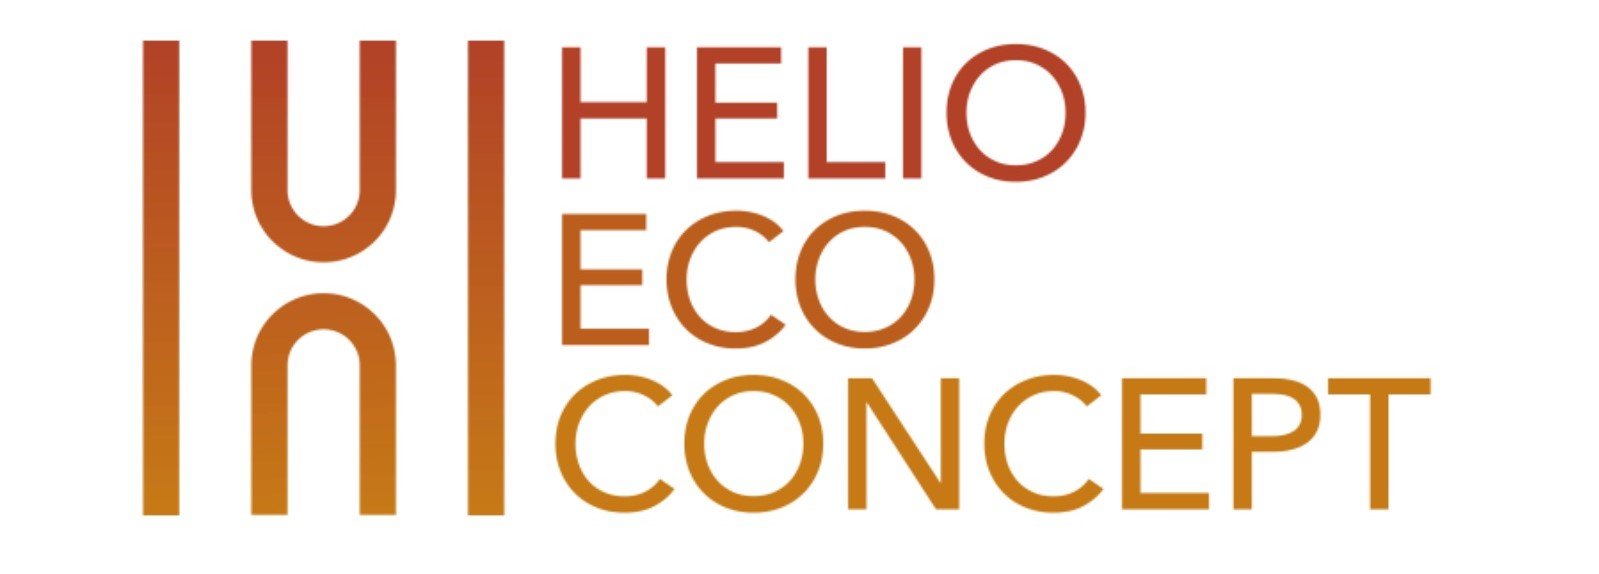 Helio Concept